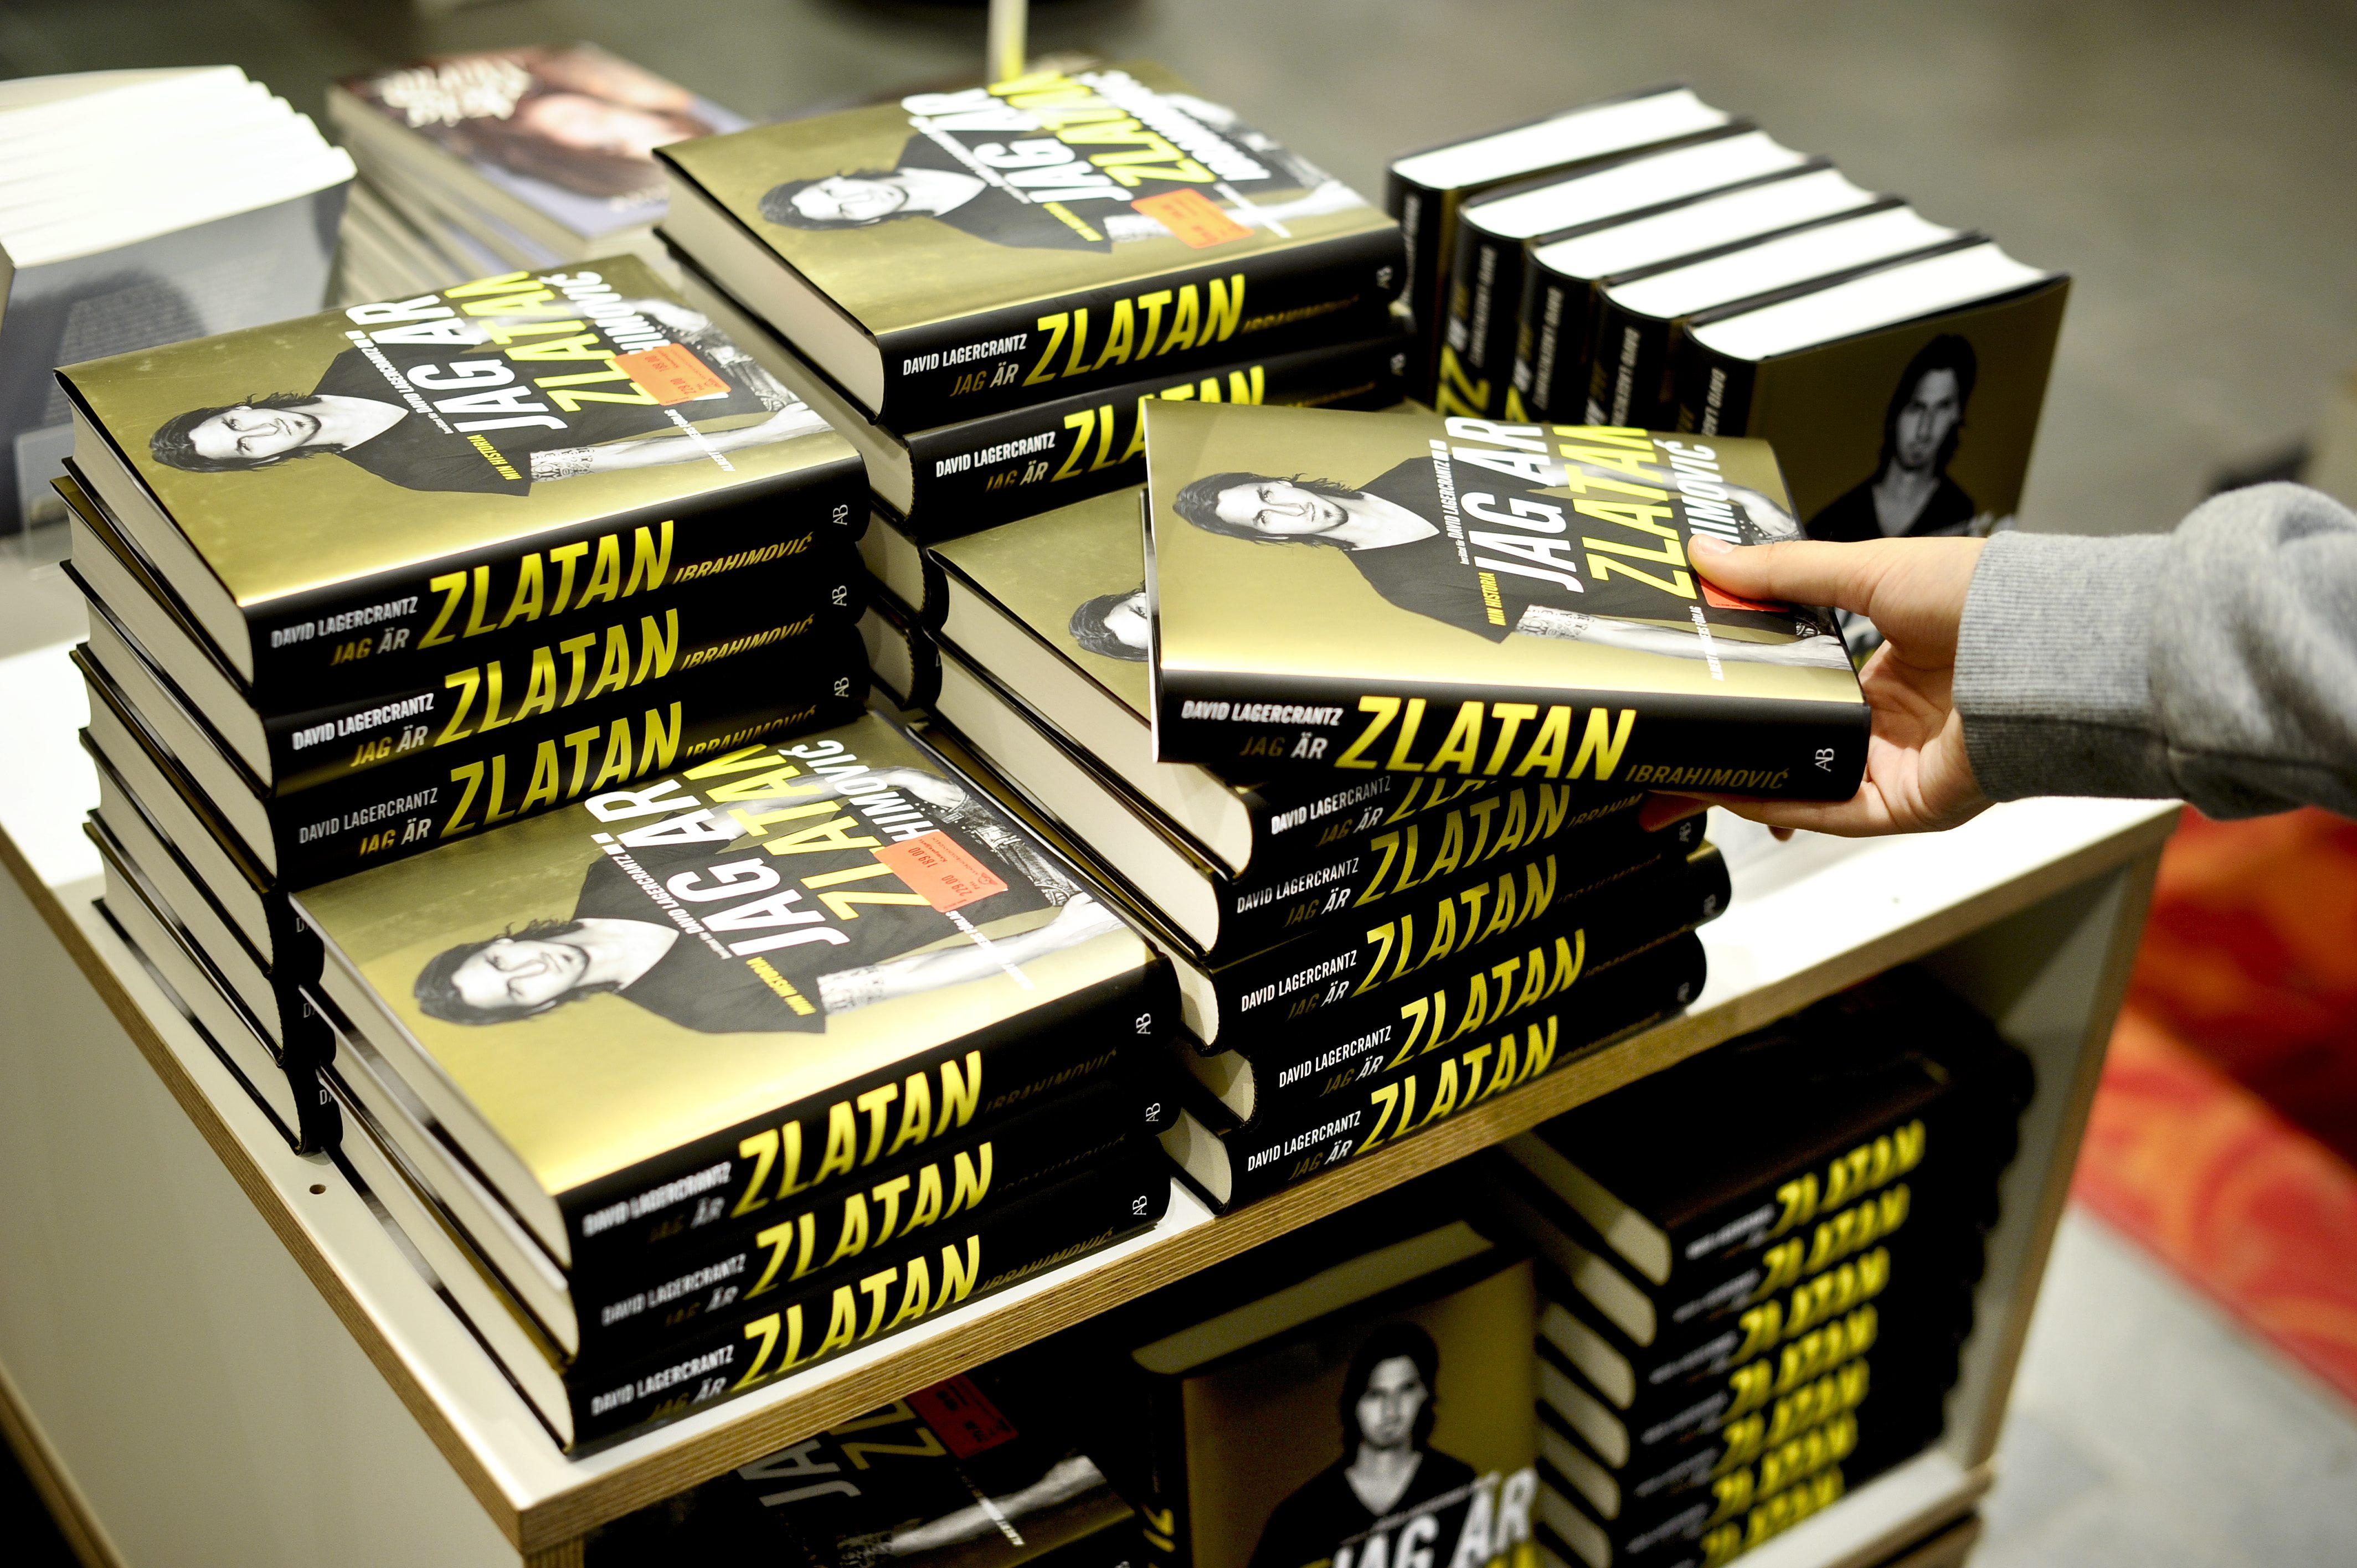 Och nog lyckades han allt. Men kanske inte med alla. "Jag är Zlatan" blev, föga oväntat, en av årets mest sålda böcker.